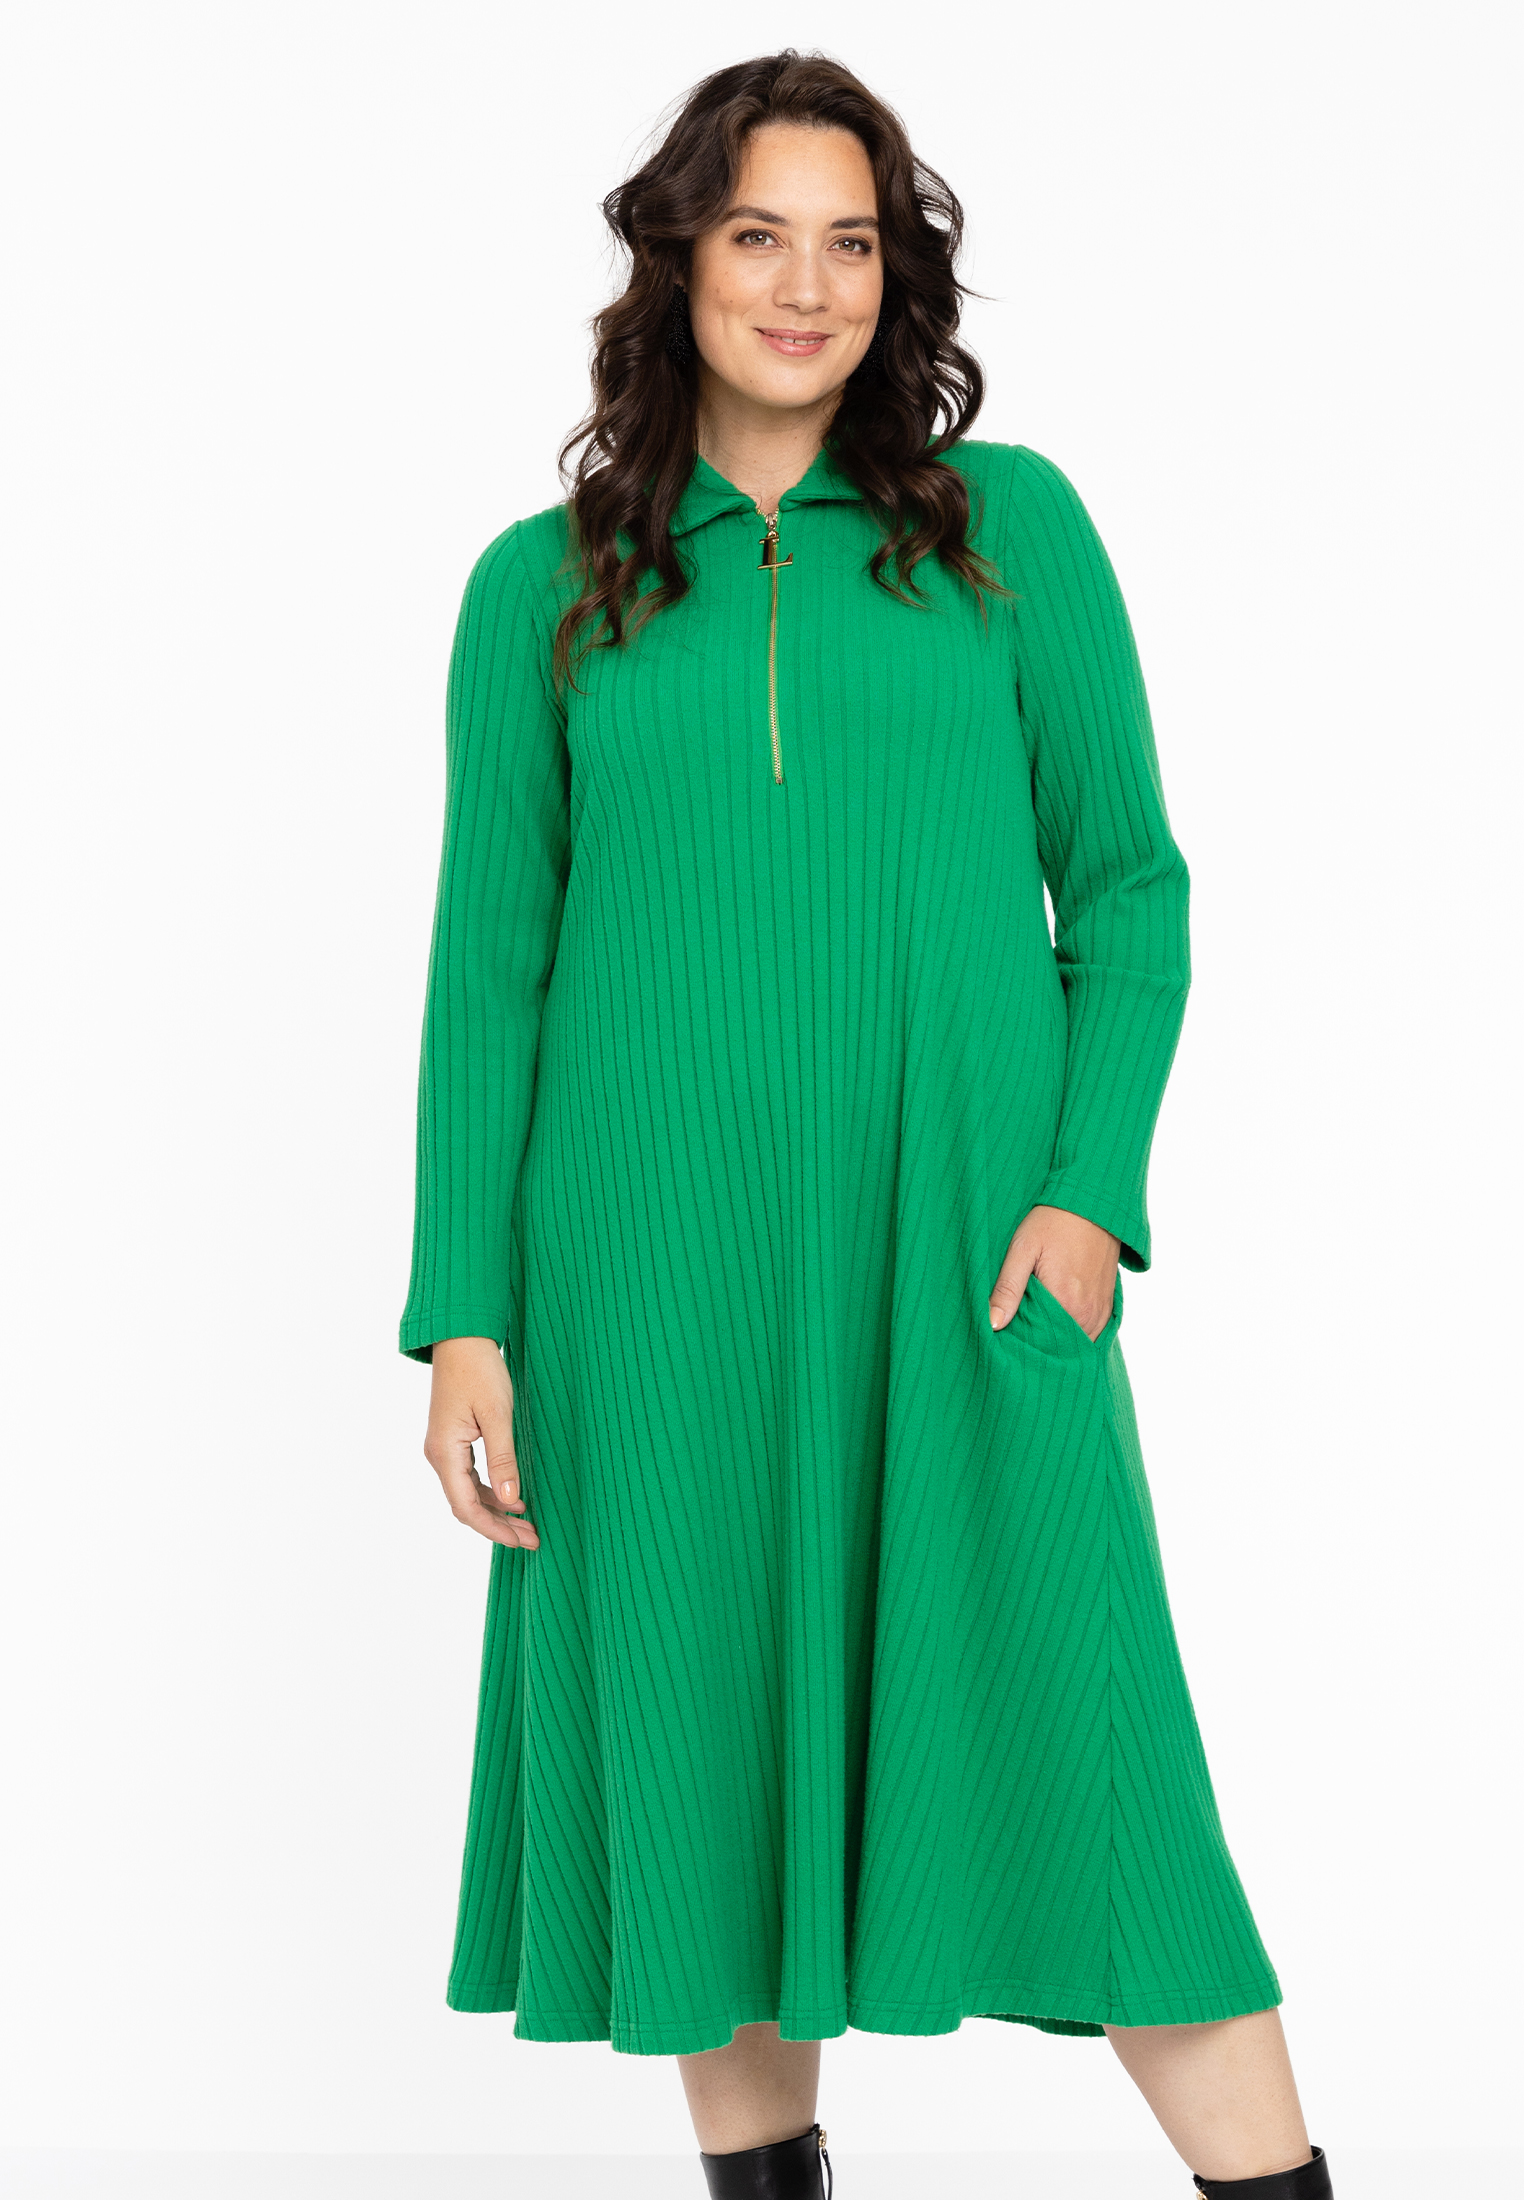 Lange jurk met rits RIB 42/44 green